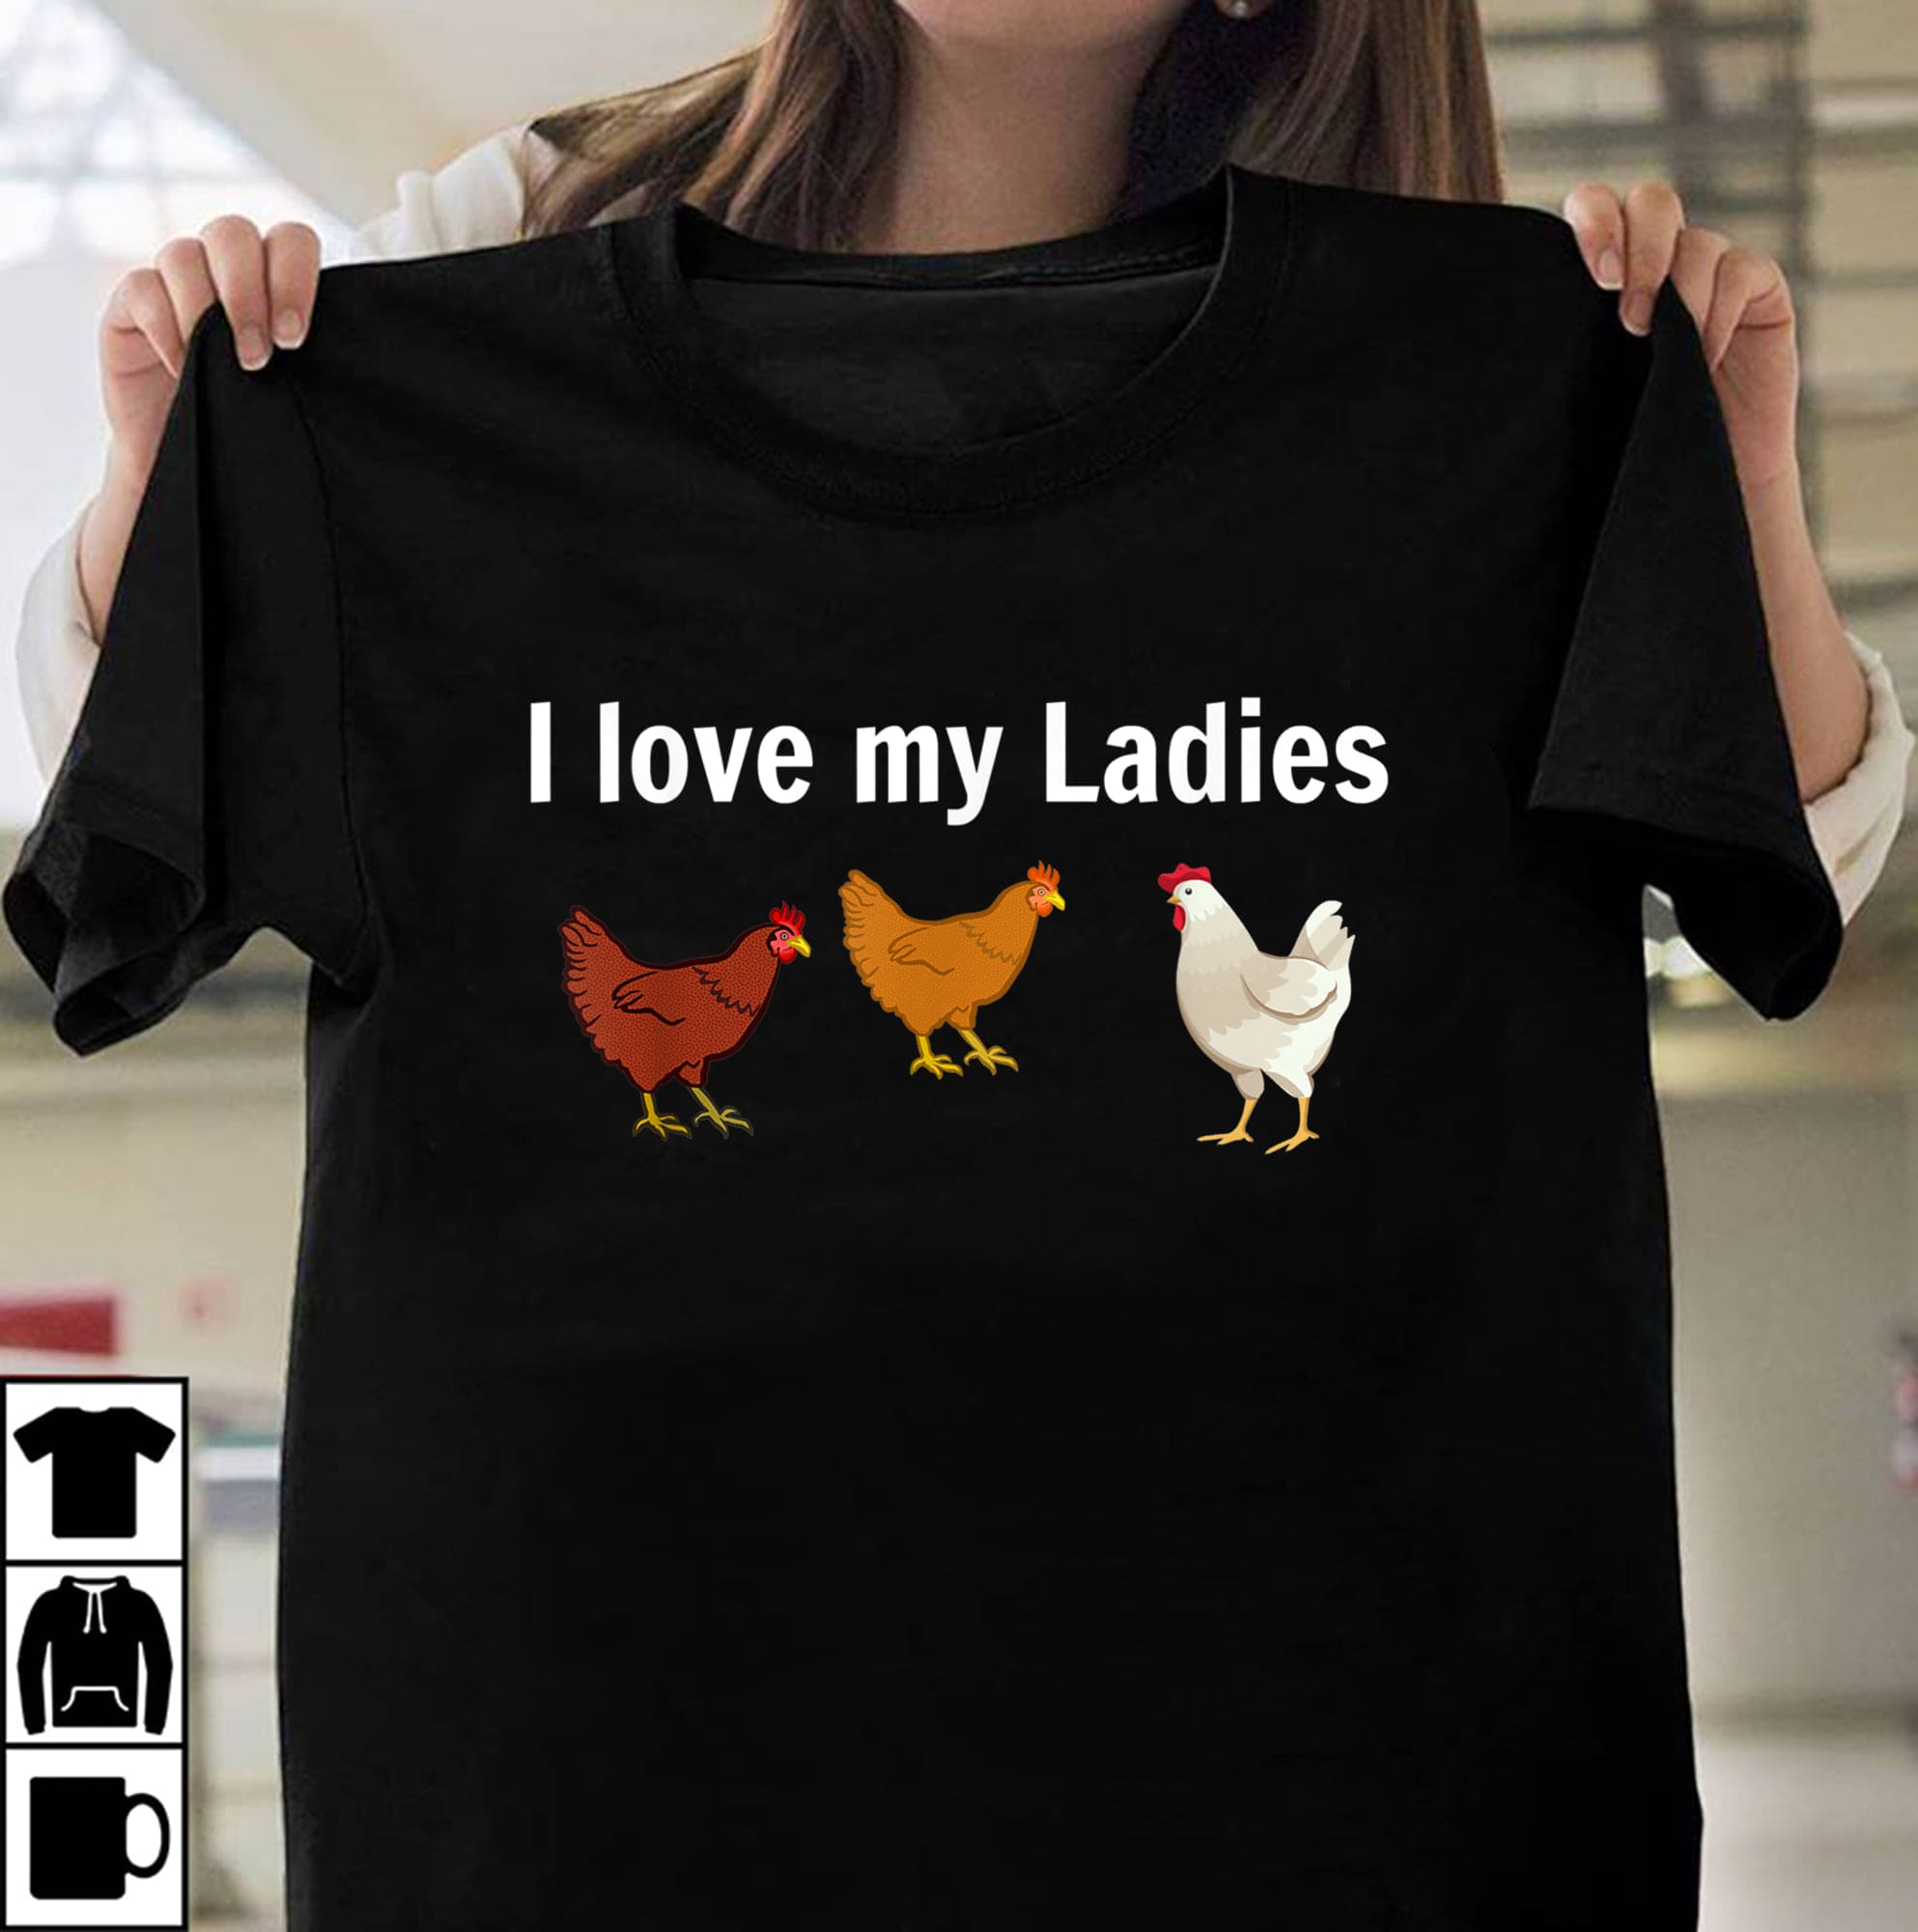 Chicken Lady Chicken Graphic T-shirt - I love my ladies